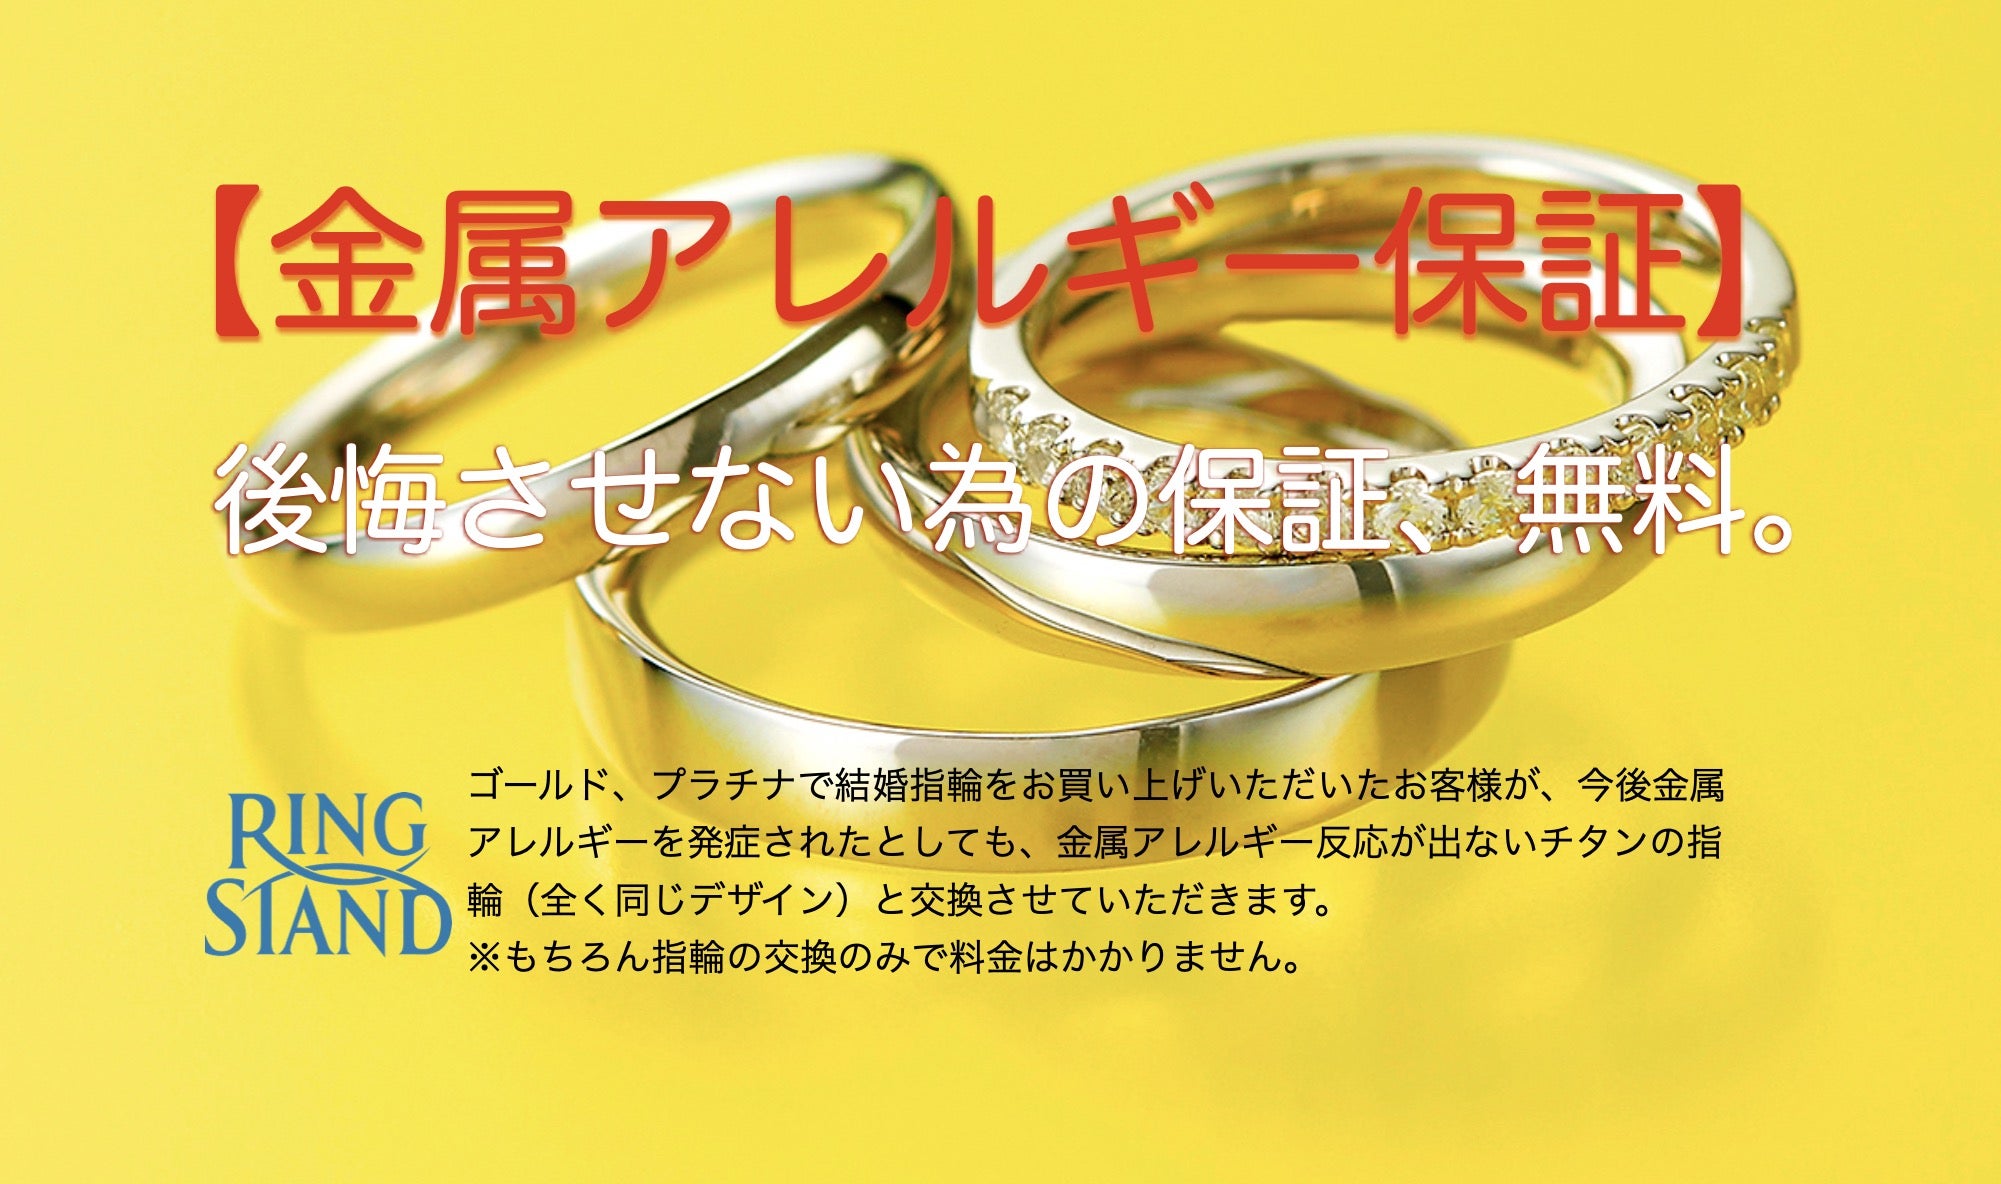 横浜の結婚指輪専門店RING STAND リングスタンド 途中で金属アレルギーになっても無料交換 RING STAND 横浜本店